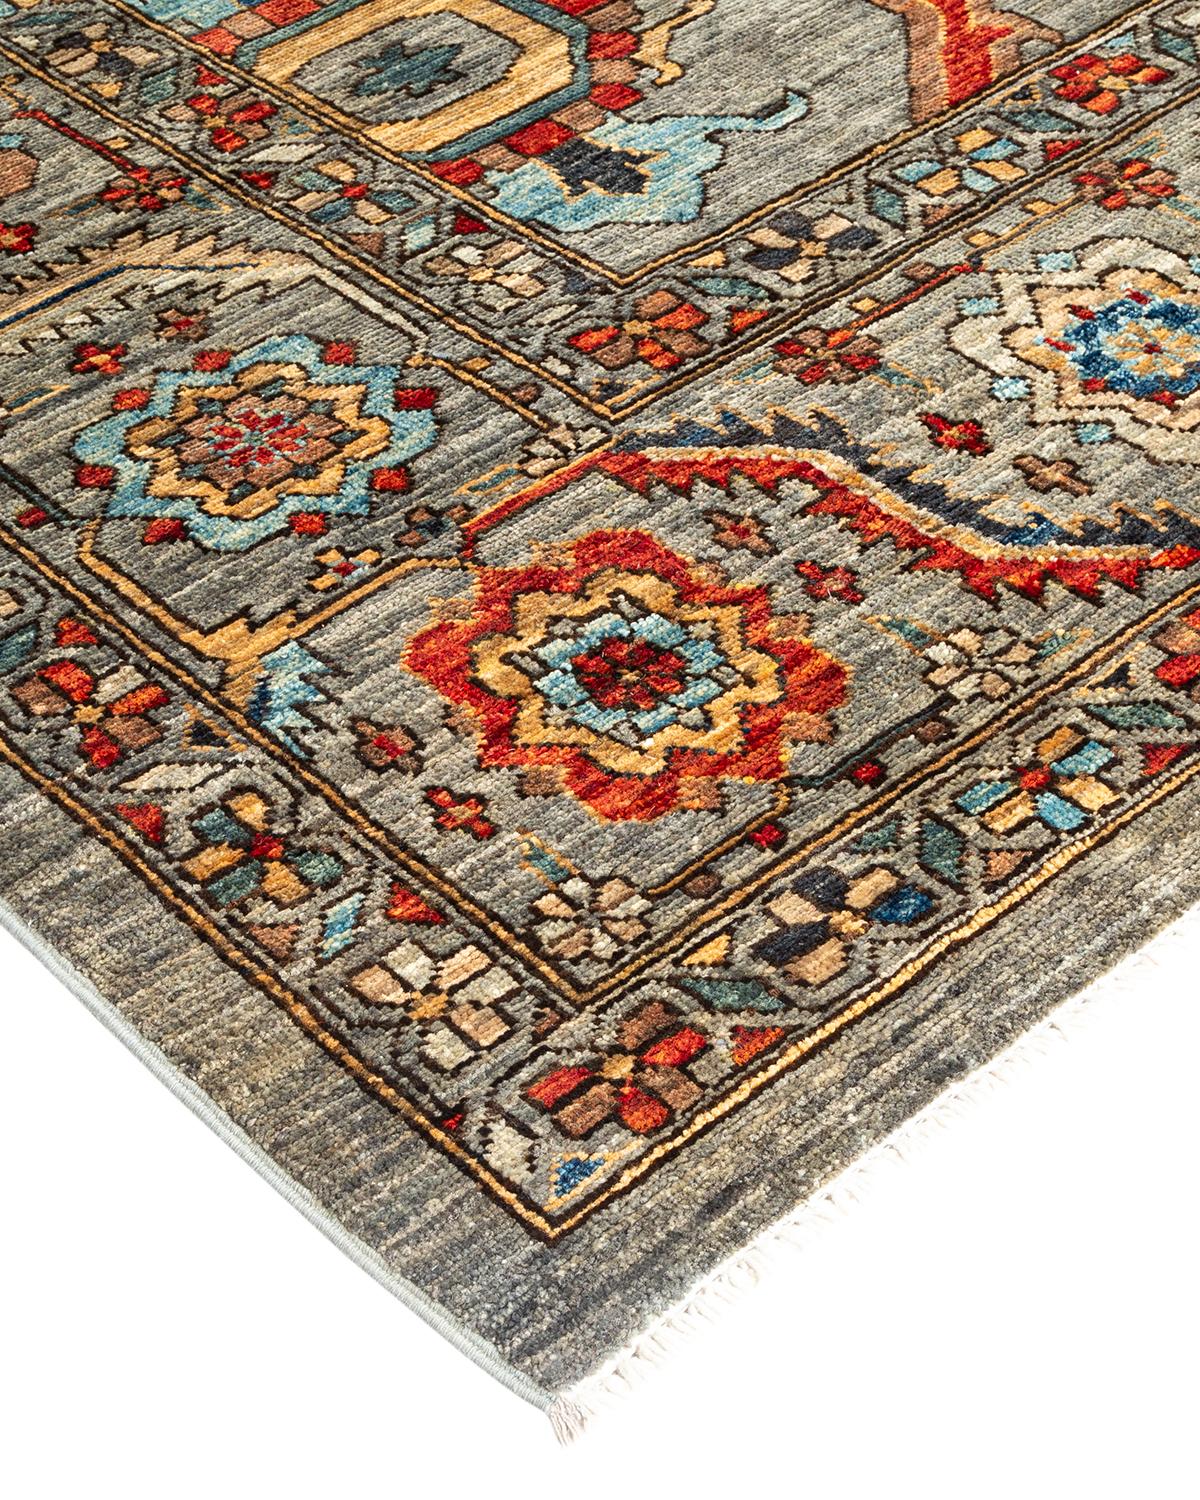 La ricca tradizione tessile dell'Africa occidentale ha ispirato la collezione Tribal di tappeti annodati a mano. Incorporando una serie di motivi geometrici, in palette che vanno dalla terra alla vivacità, questi tappeti danno un senso di energia e